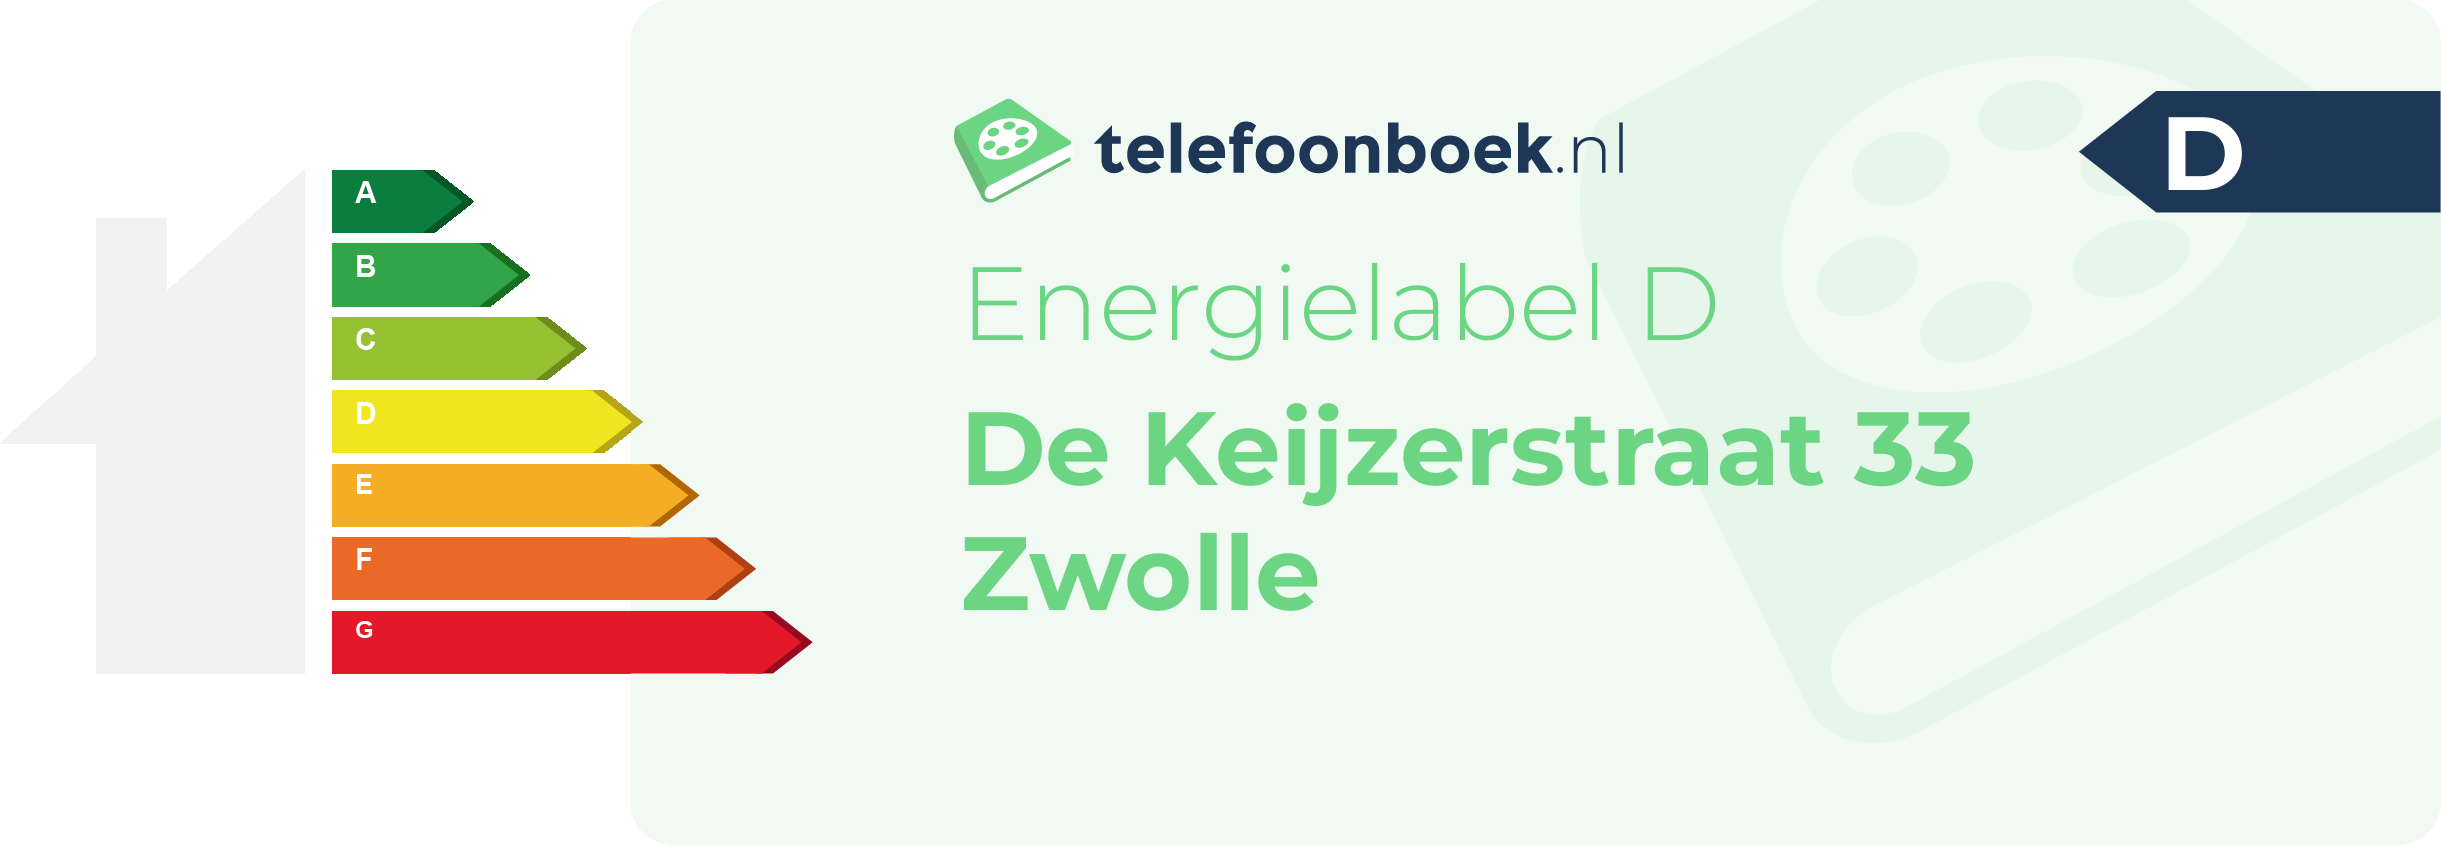 Energielabel De Keijzerstraat 33 Zwolle